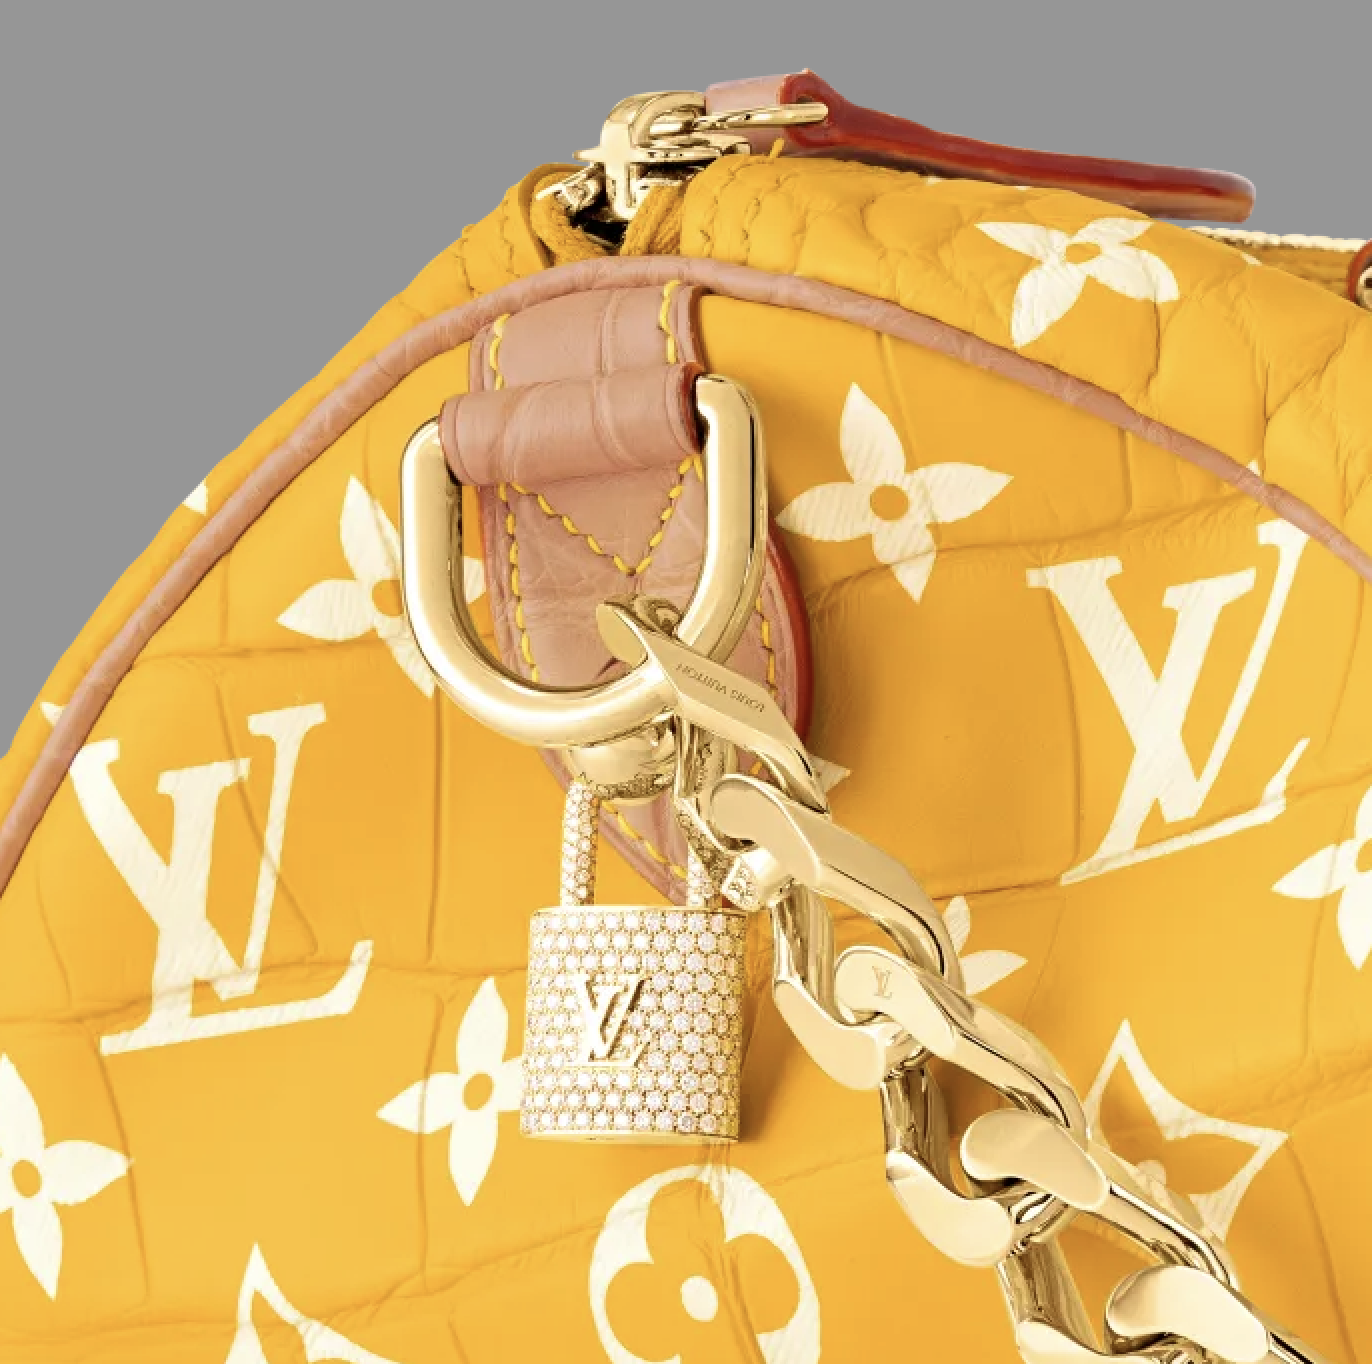 El bolso LV de Pharell de $1 millón de dólares estará disponible en cuatro colores